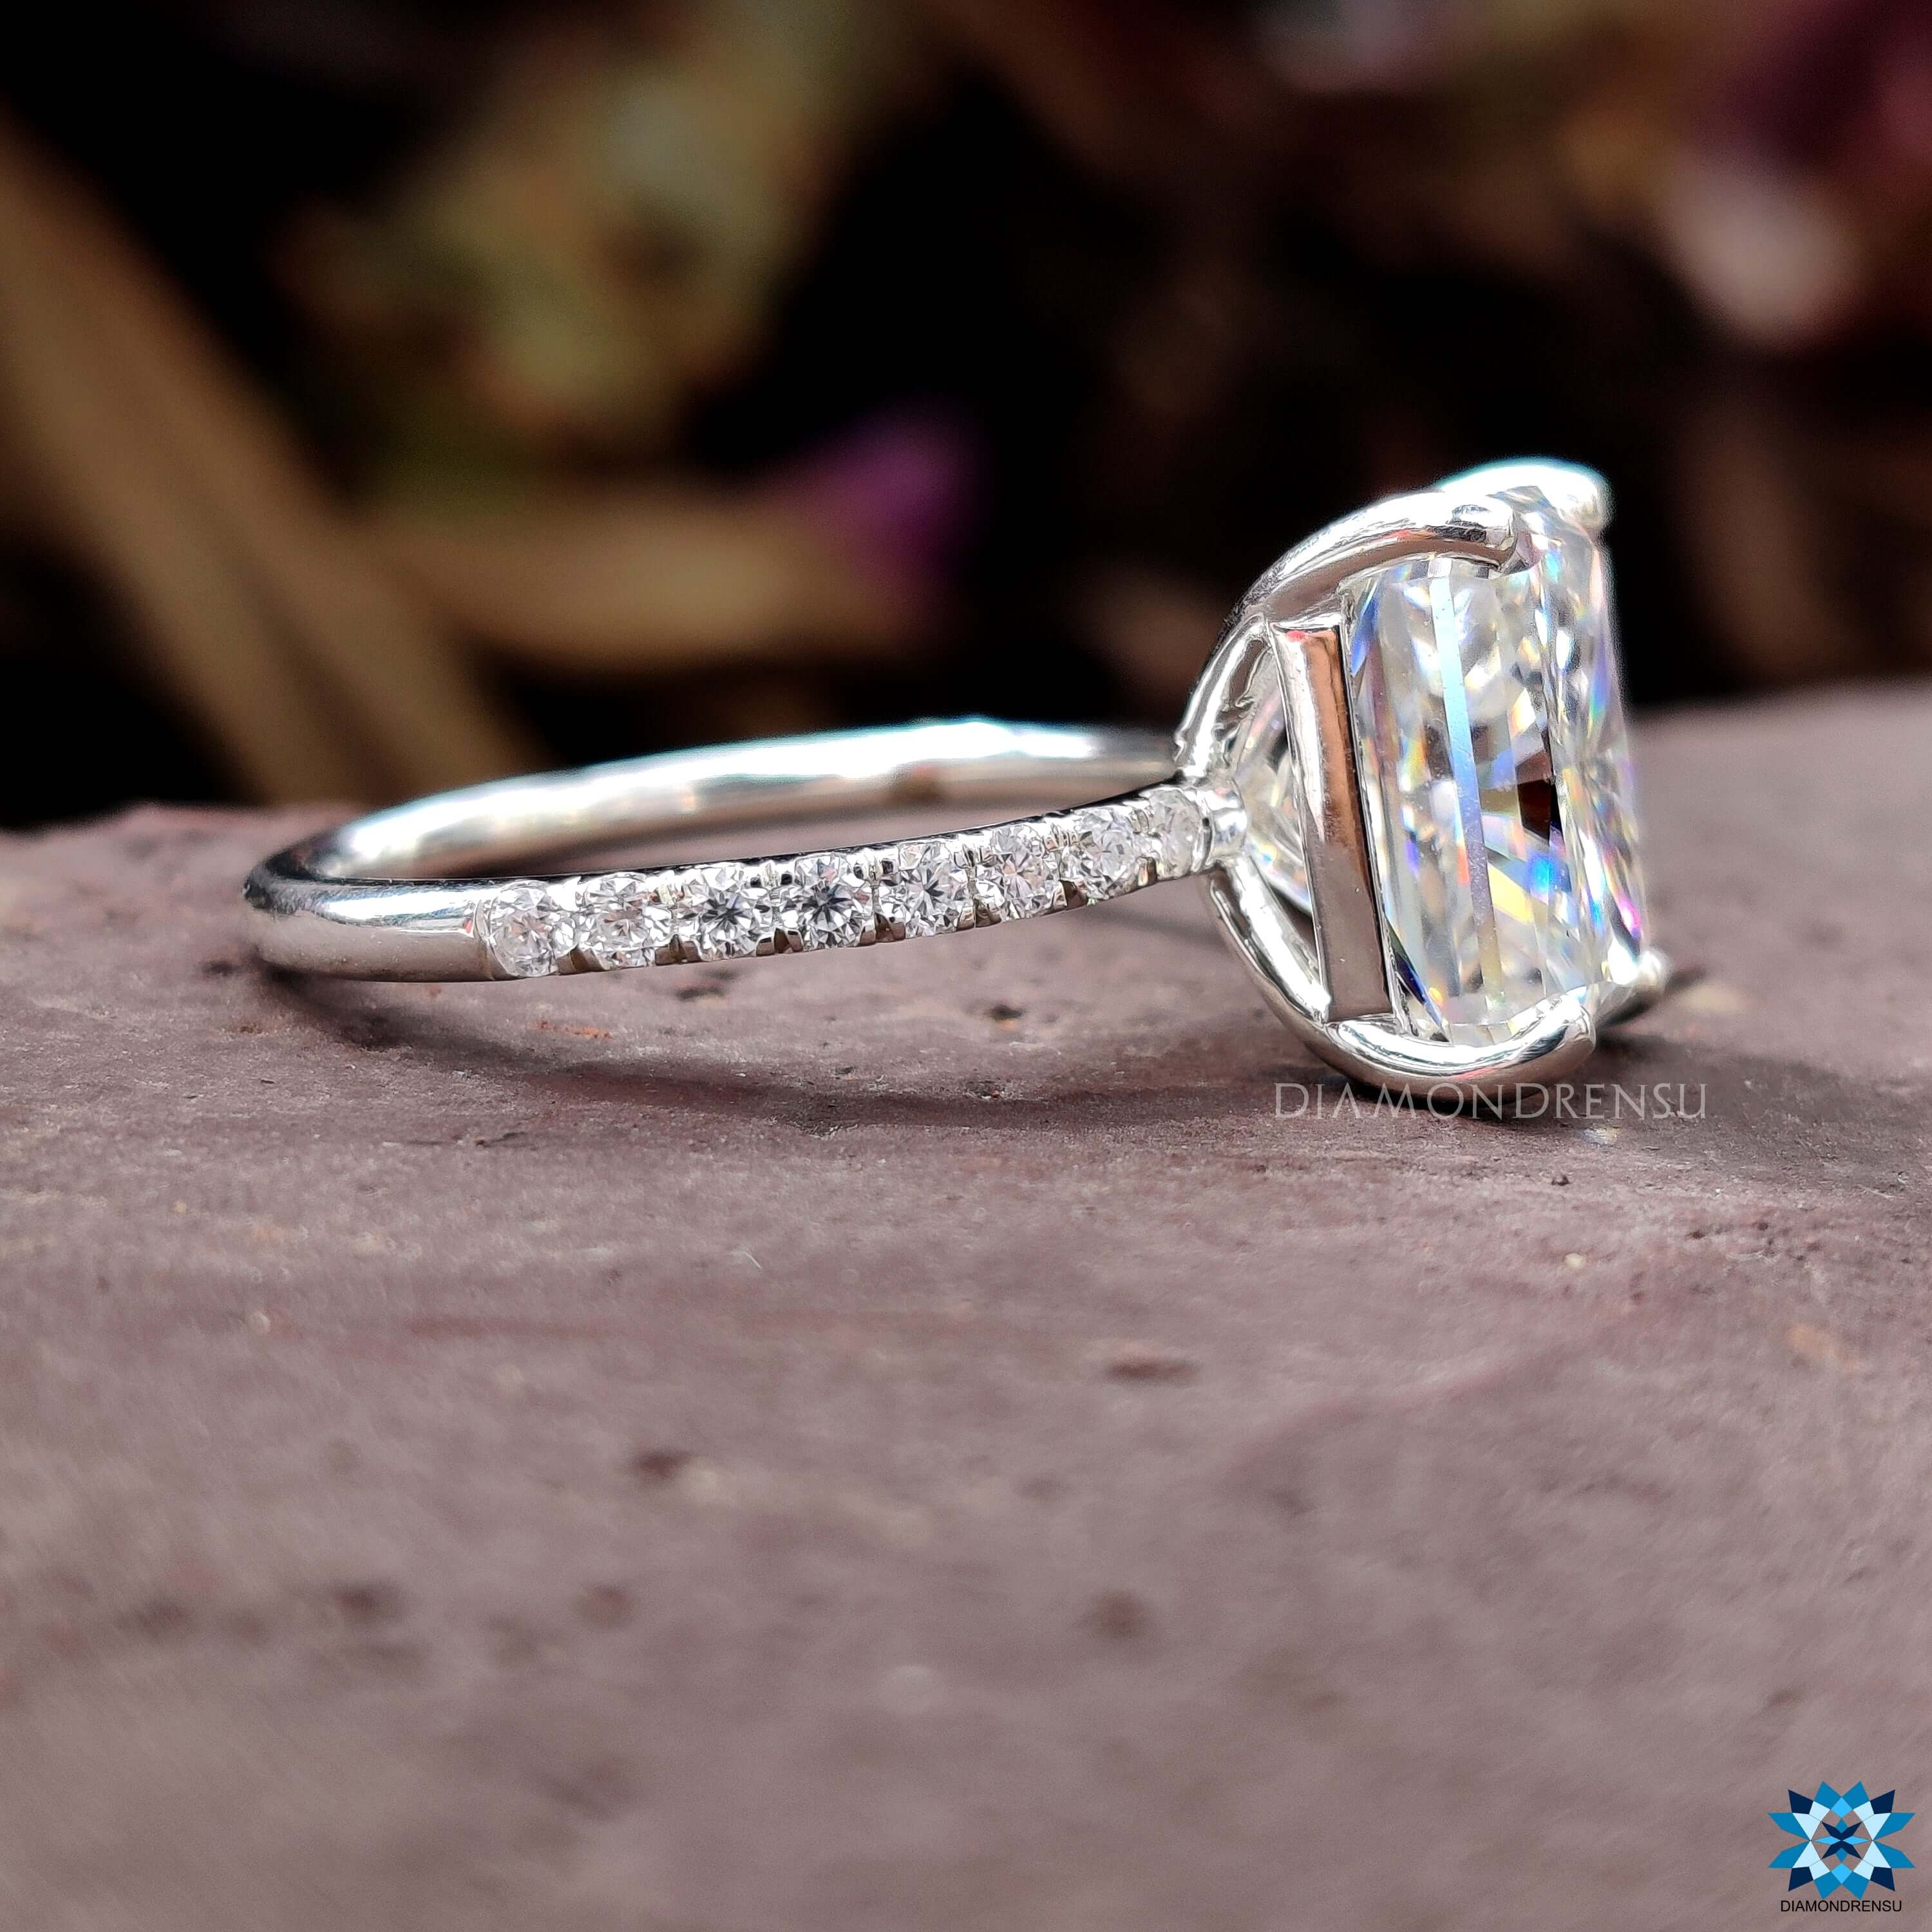 pave set engagement ring - diamondrensu